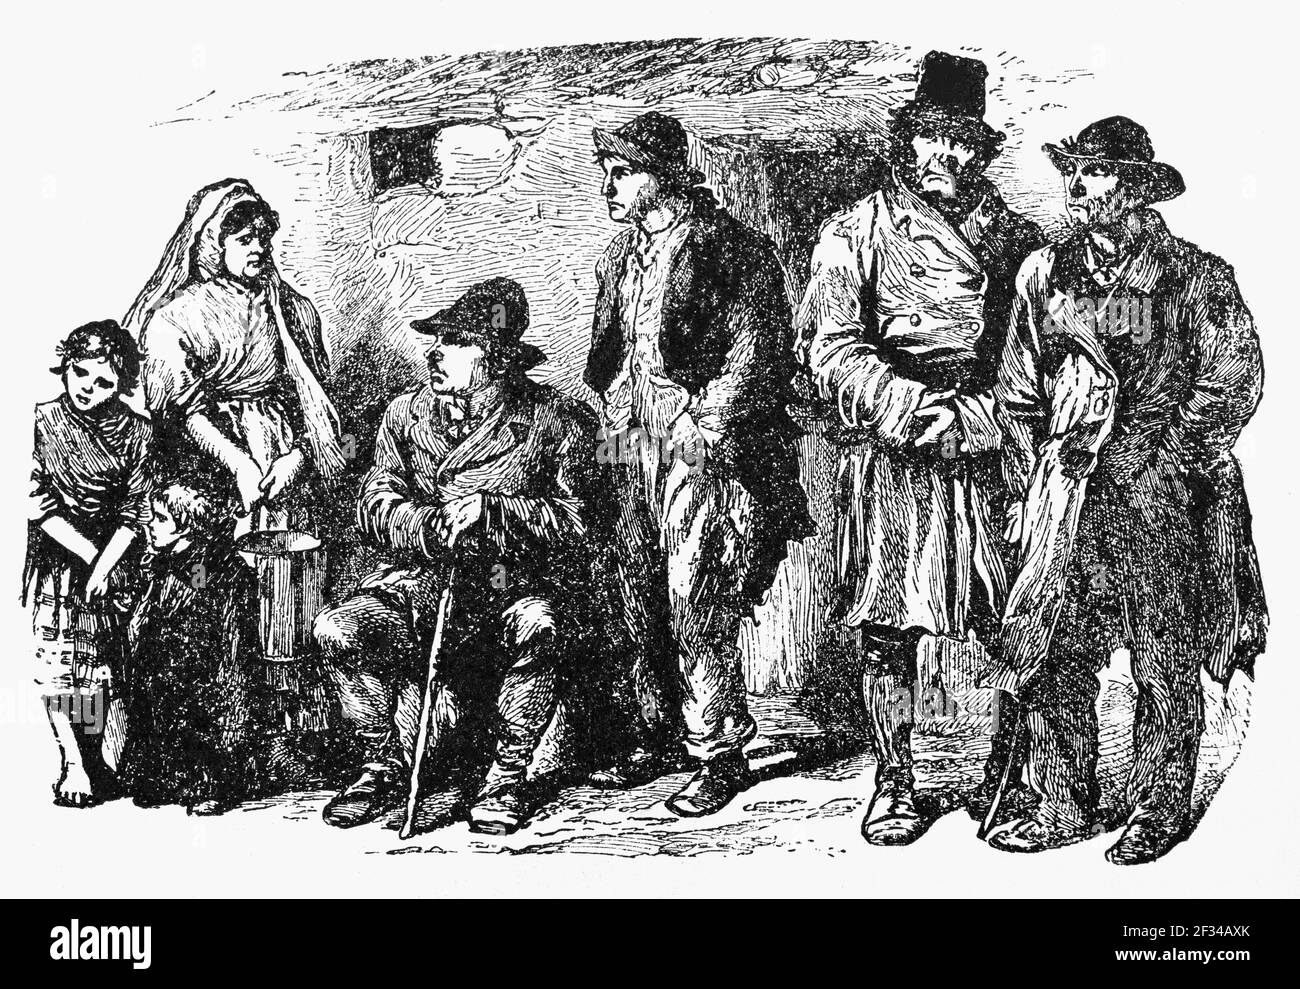 Eine Gruppe von Mondscheinern im 19th. Jahrhundert Connemara, Grafschaft Galway, Irland. Nach der großen Hungersnot und den Vertreibungen irischer Familien durch abwesende Vermieter, die Moonlighters, wurde 1879 eine geheime Organisation gegründet, um Irland von der englischen Herrschaft zu befreien. Stockfoto